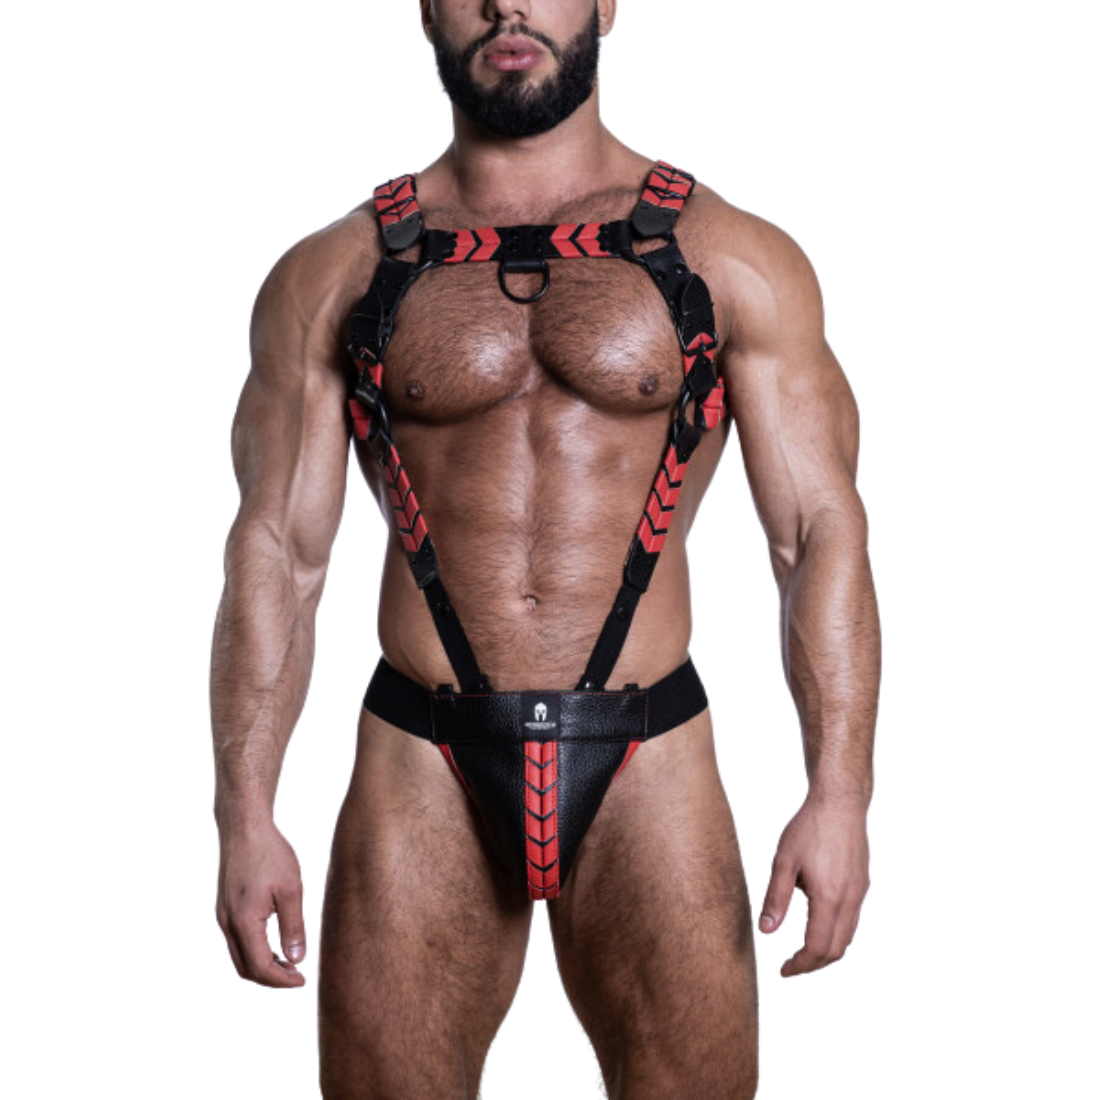 Zwarte, leren full body harnas met rode details en metalen cock ring, ontworpen door Sparta’s Harness en te koop bij Flavourez.